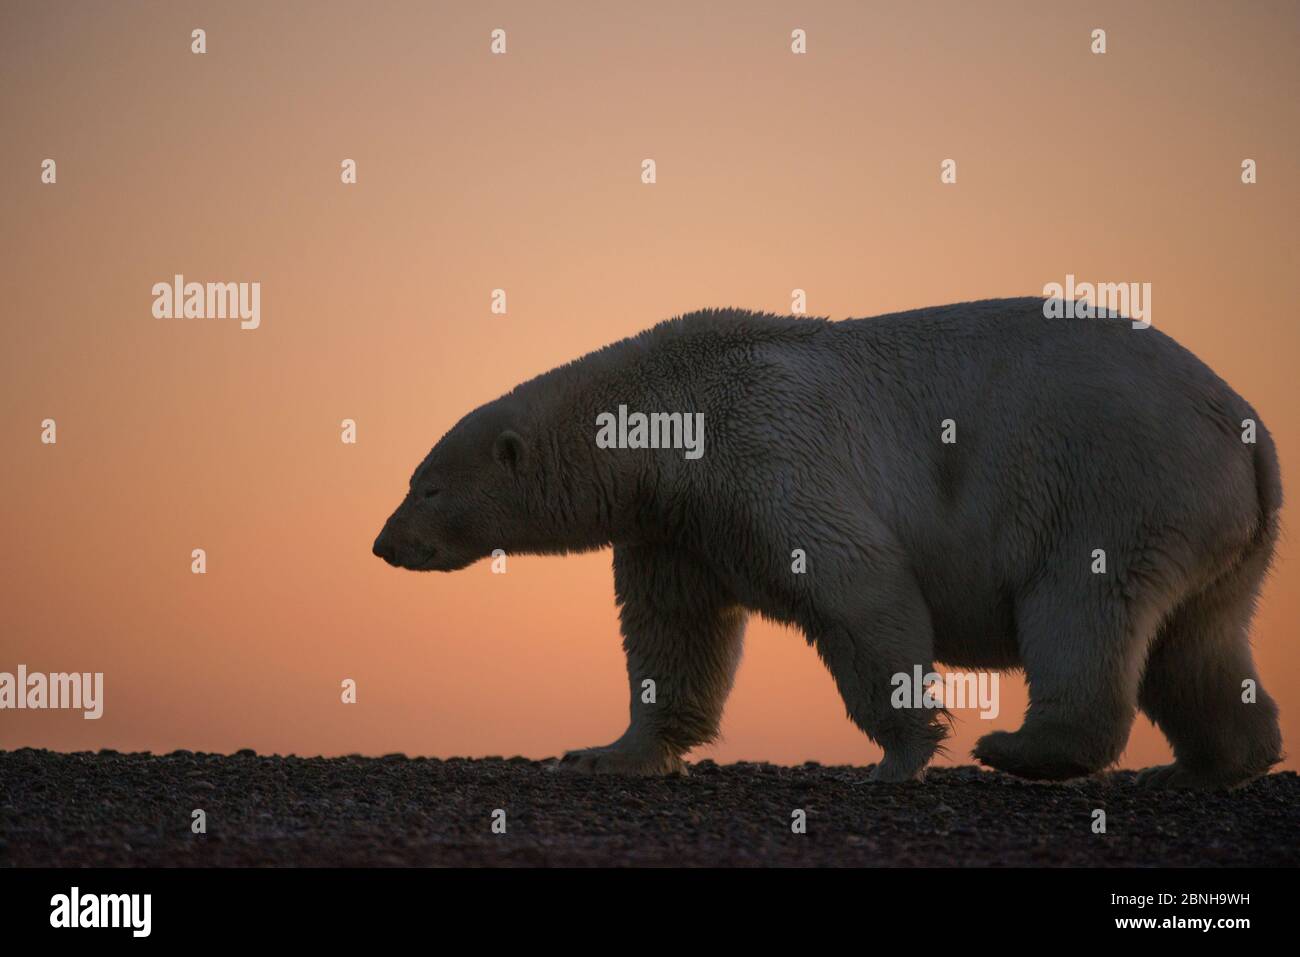 Orso polare (Ursus maritimus) a piedi, silhouetted al tramonto, Bernard Spit, al largo della 1002 Area, Arctic National Wildlife Refuge, North Slope, Alaska, Stati Uniti Foto Stock